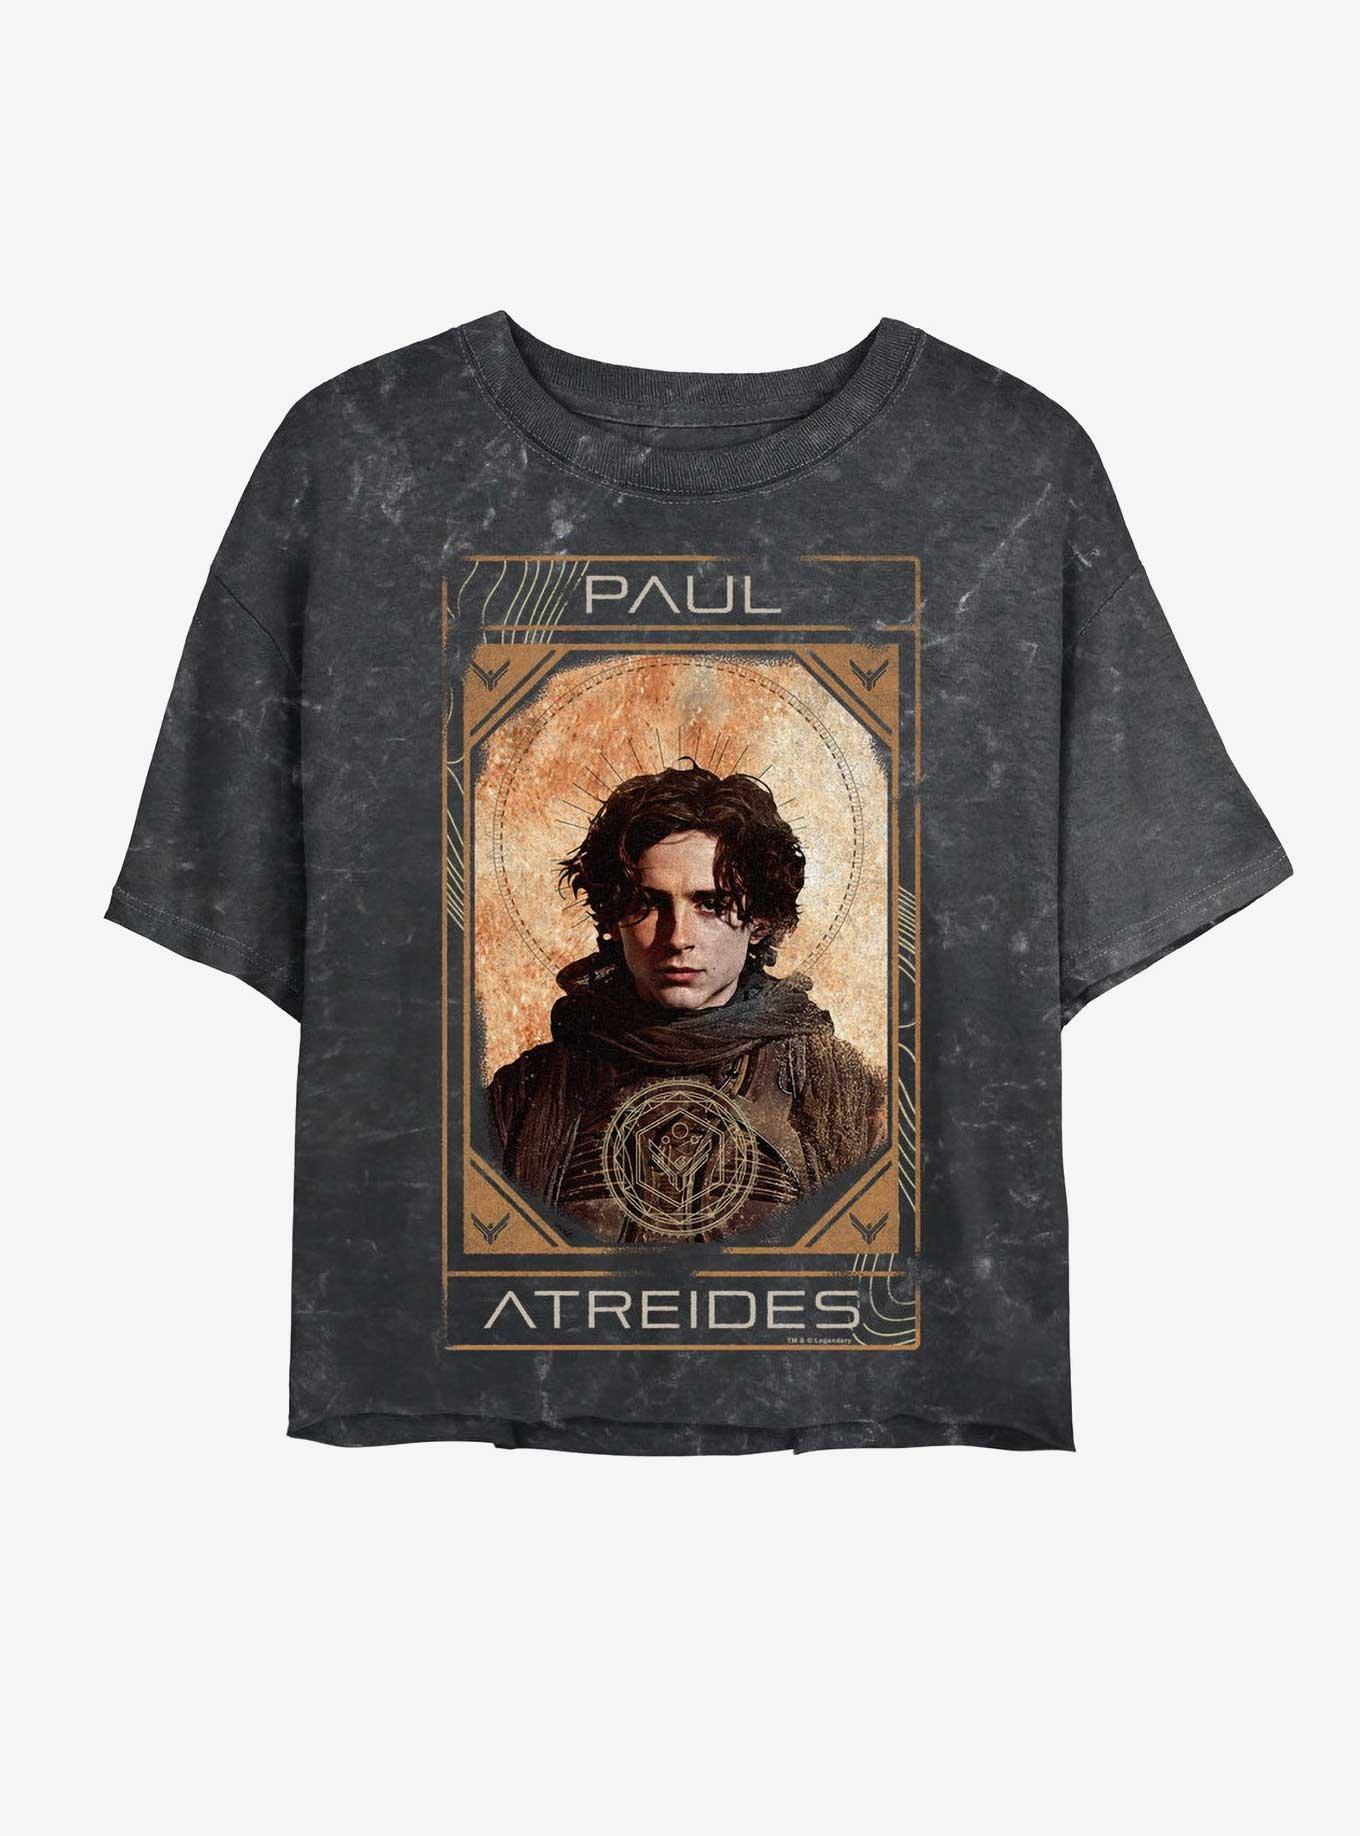 Dune: Part Two Paul Atreides Info Portrait Mineral Wash Girls Crop T-Shirt, BLACK, hi-res